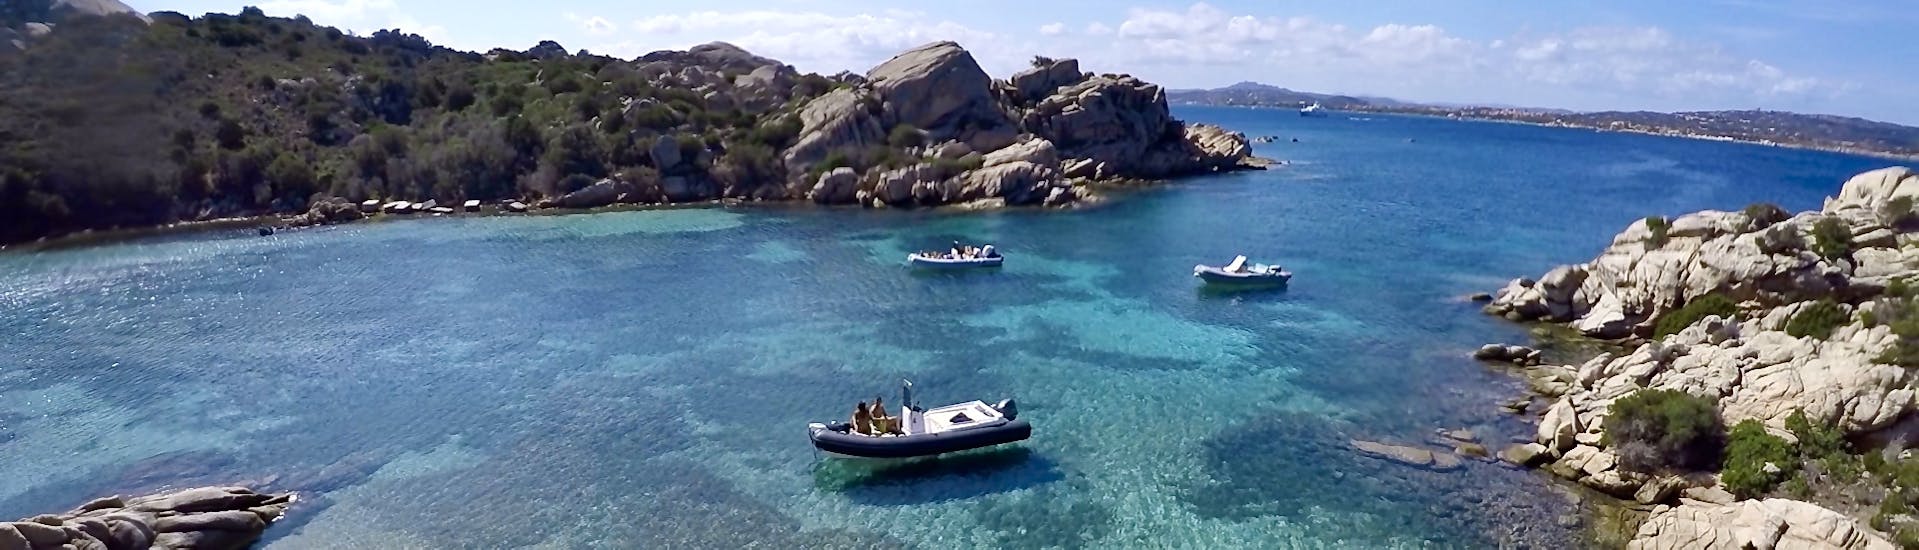 Un de nos bateaux pneumatiques navigue dans les eaux émeraude de l'archipel de La Maddalena lors d'une location de bateau pneumatique sans permis à Cannigione et Baja Sardinia (jusqu'à 6 personnes).